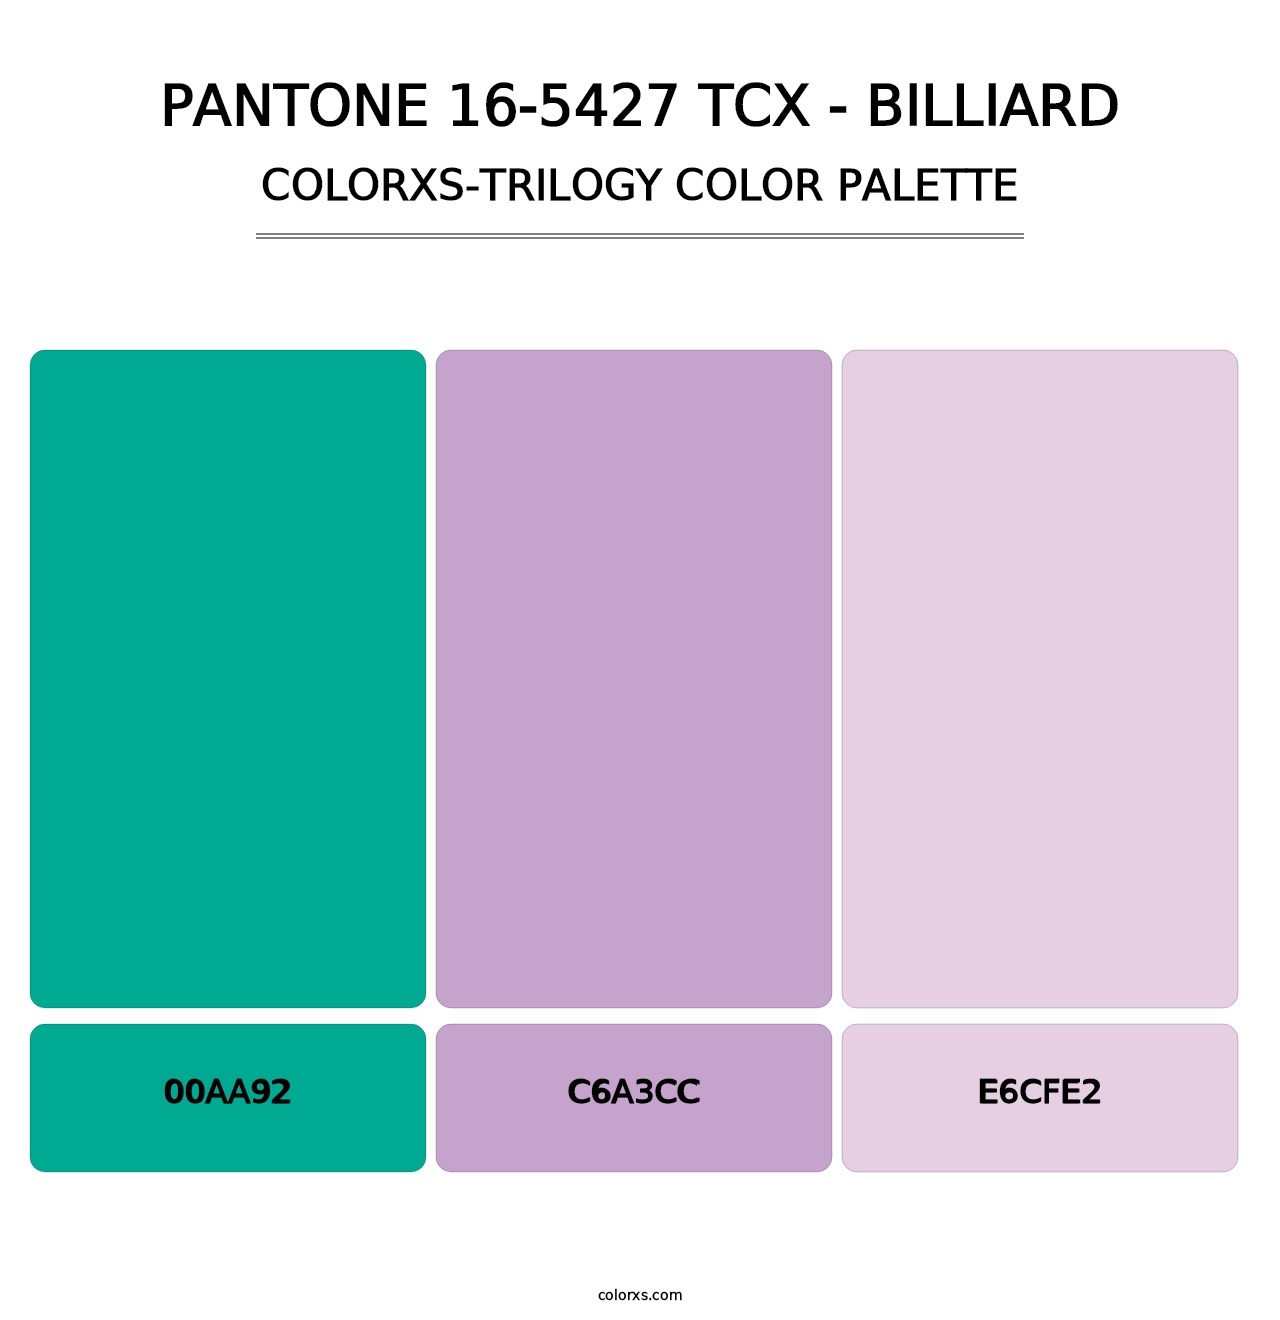 PANTONE 16-5427 TCX - Billiard - Colorxs Trilogy Palette